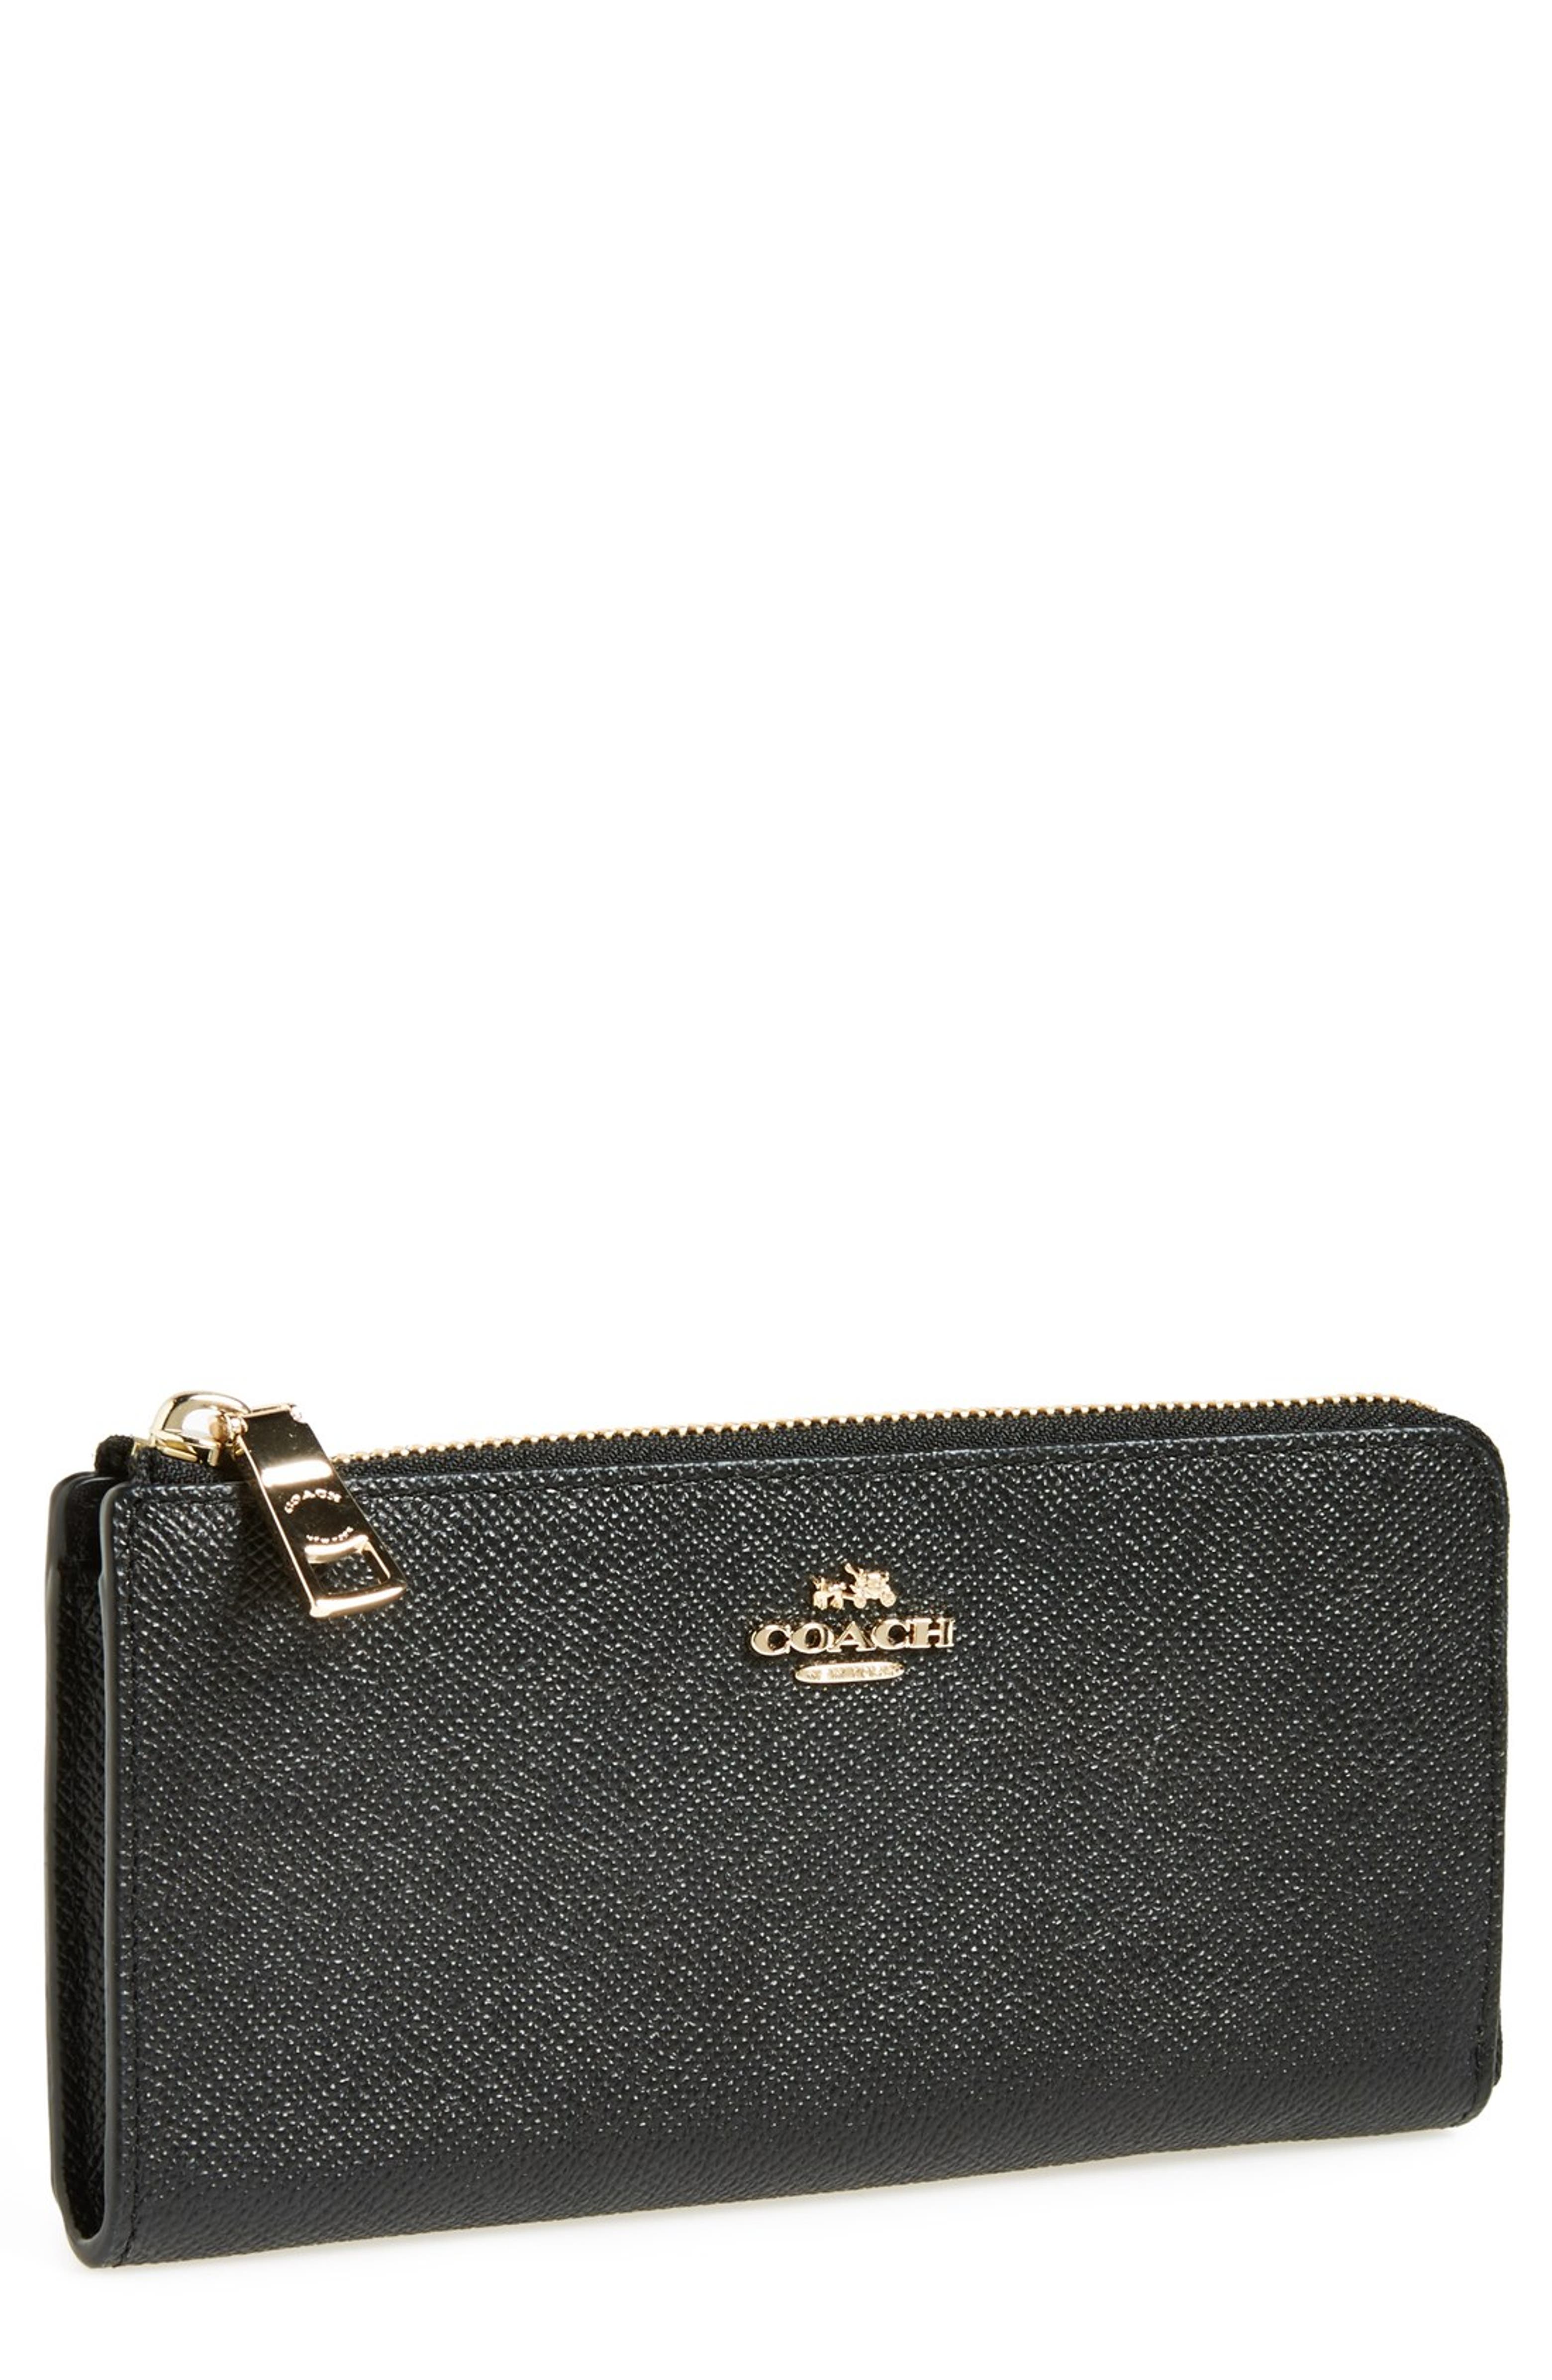 COACH 'Slim Zip' Leather Wallet | Nordstrom